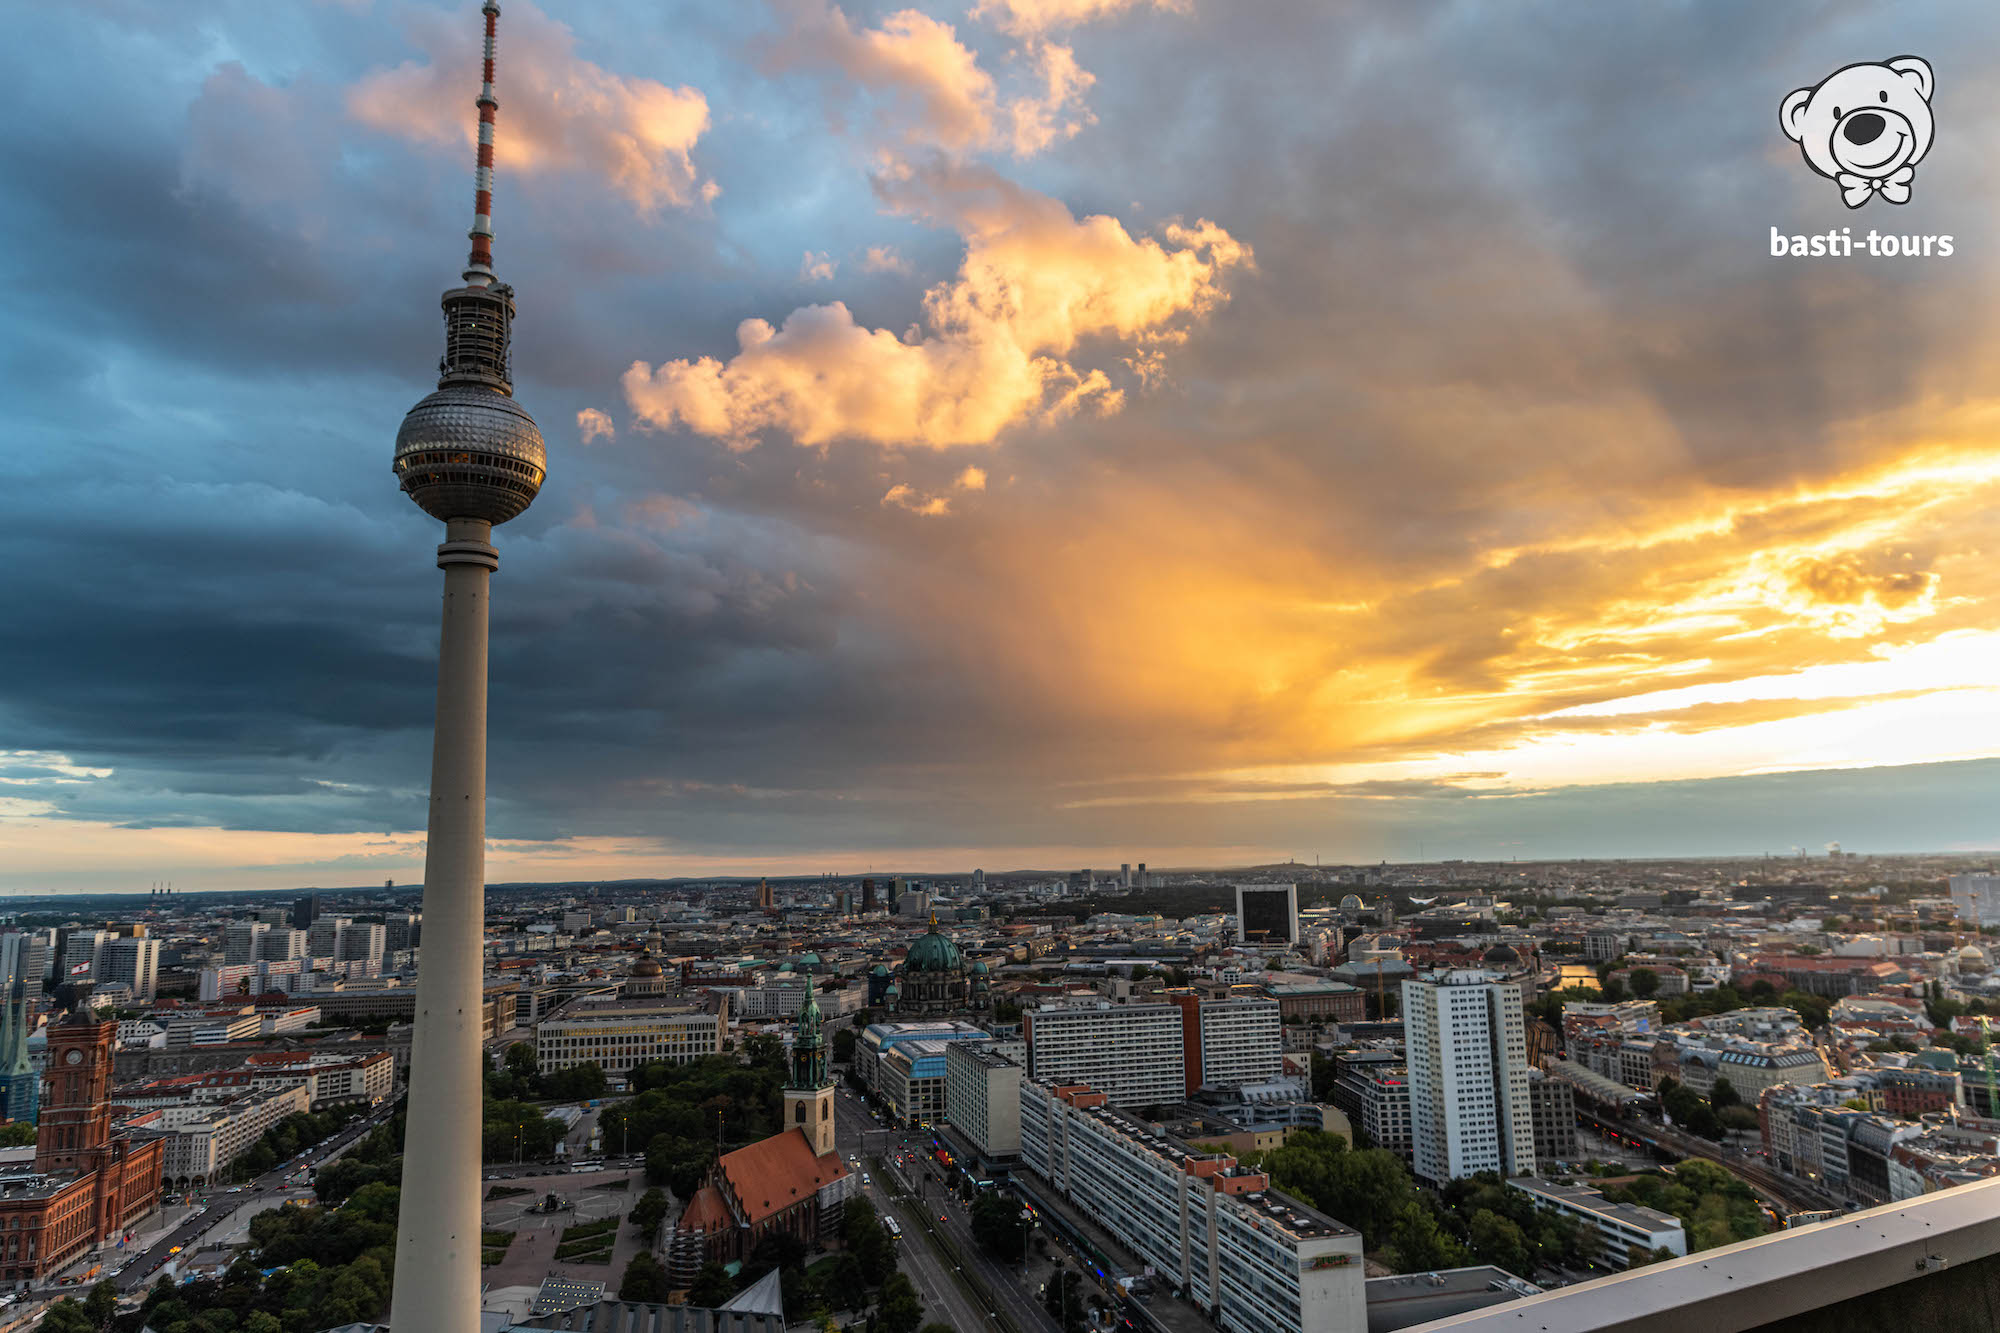 Aussicht auf den Fernsehturm in Berlin bei Sonnenuntergang - Basti-Tours Reiseblog